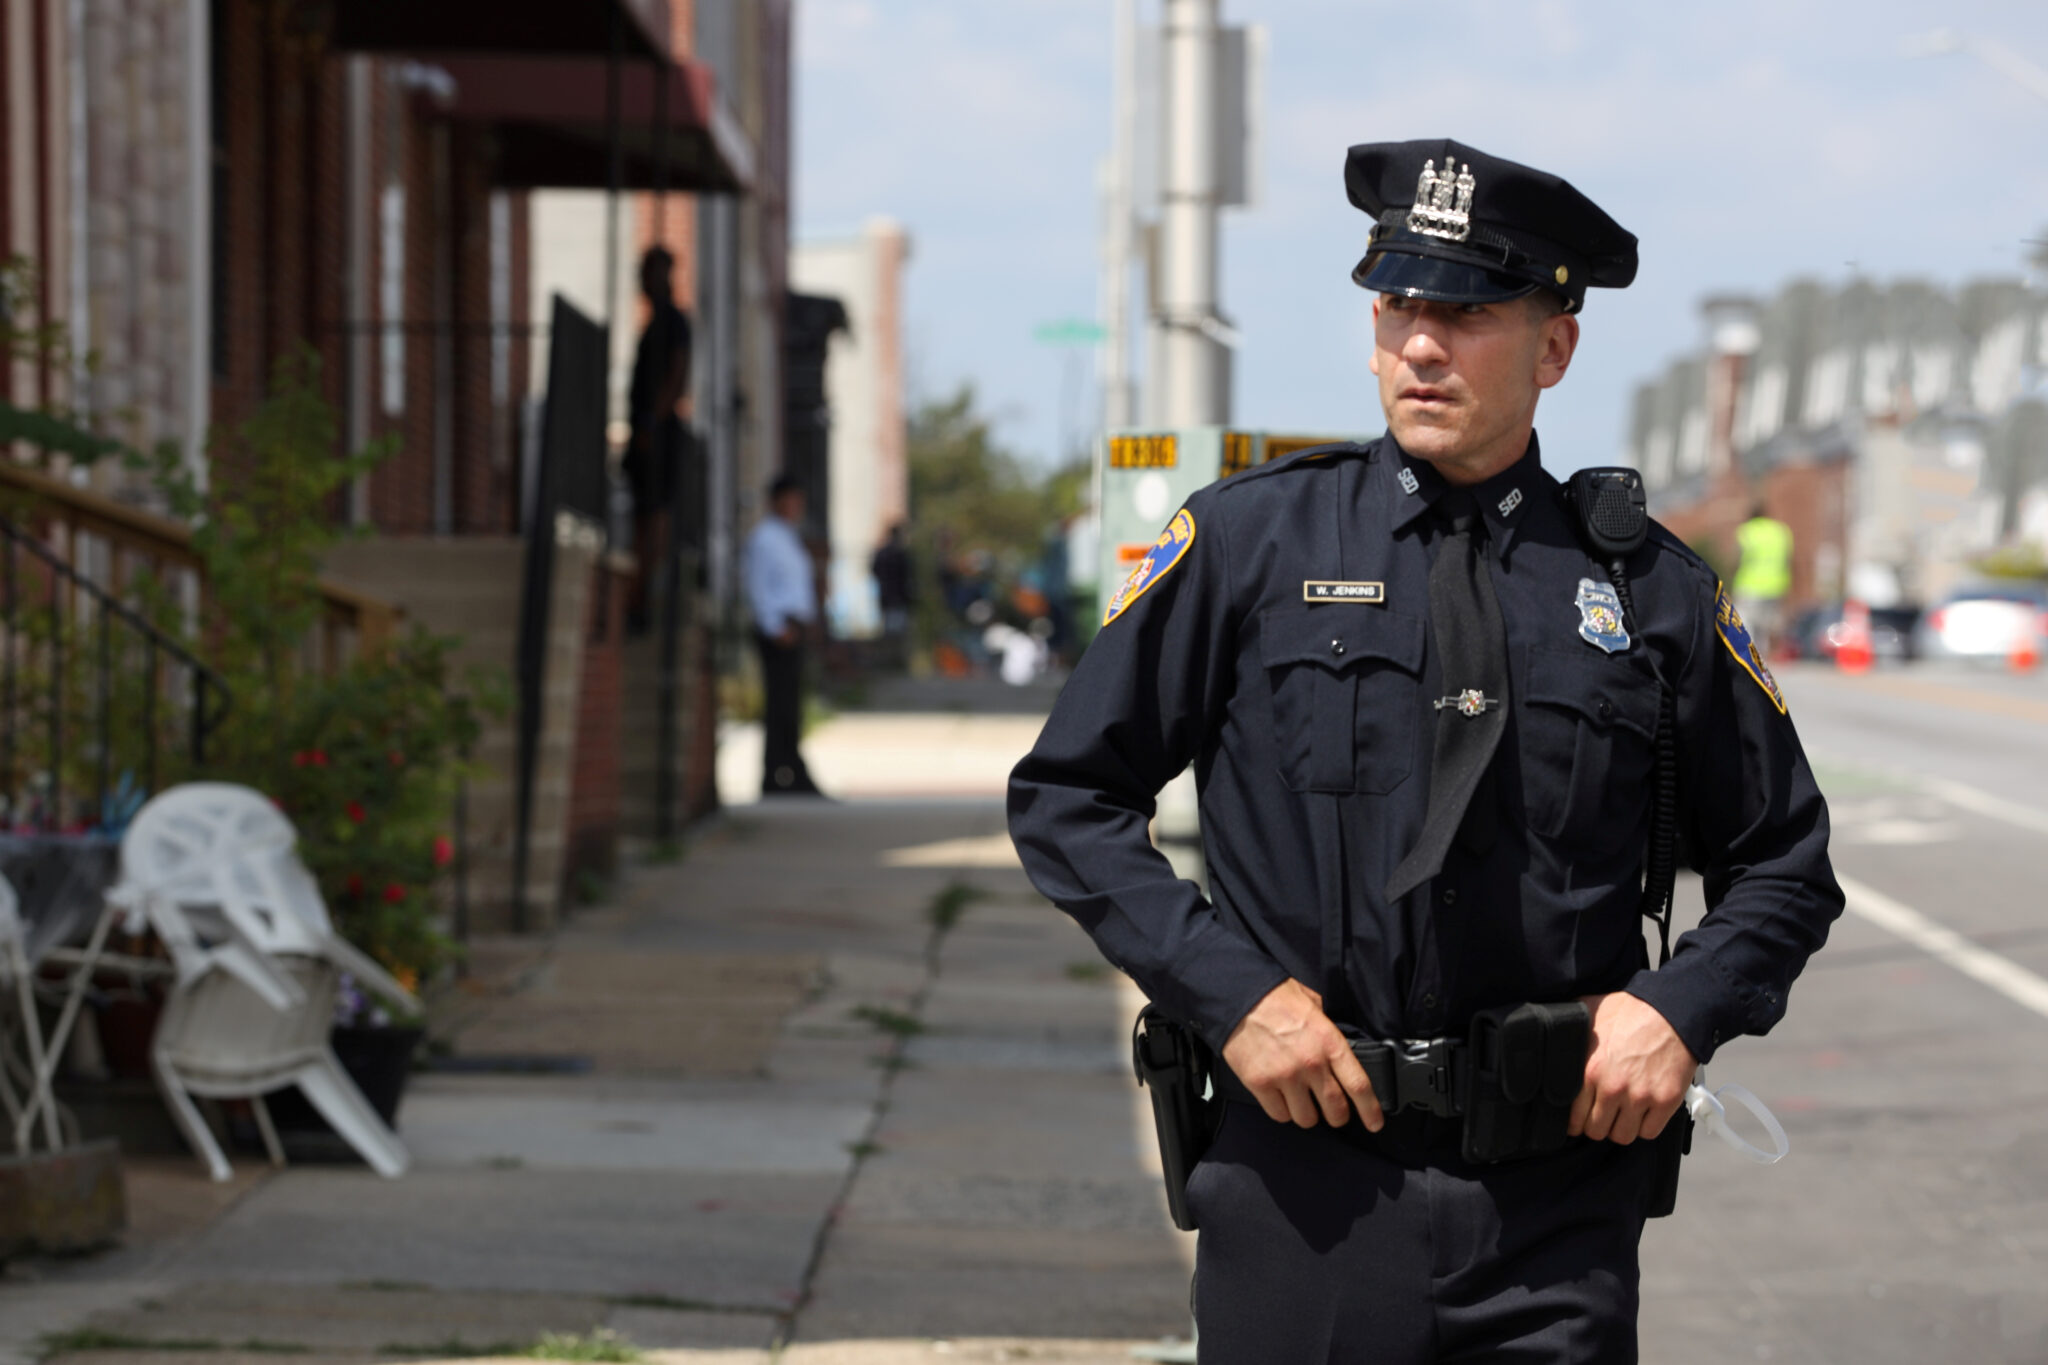 Jon Bernthal in Polizeiuniform mit Händen am Gürtel auf einer offenen Straße. We Own This City